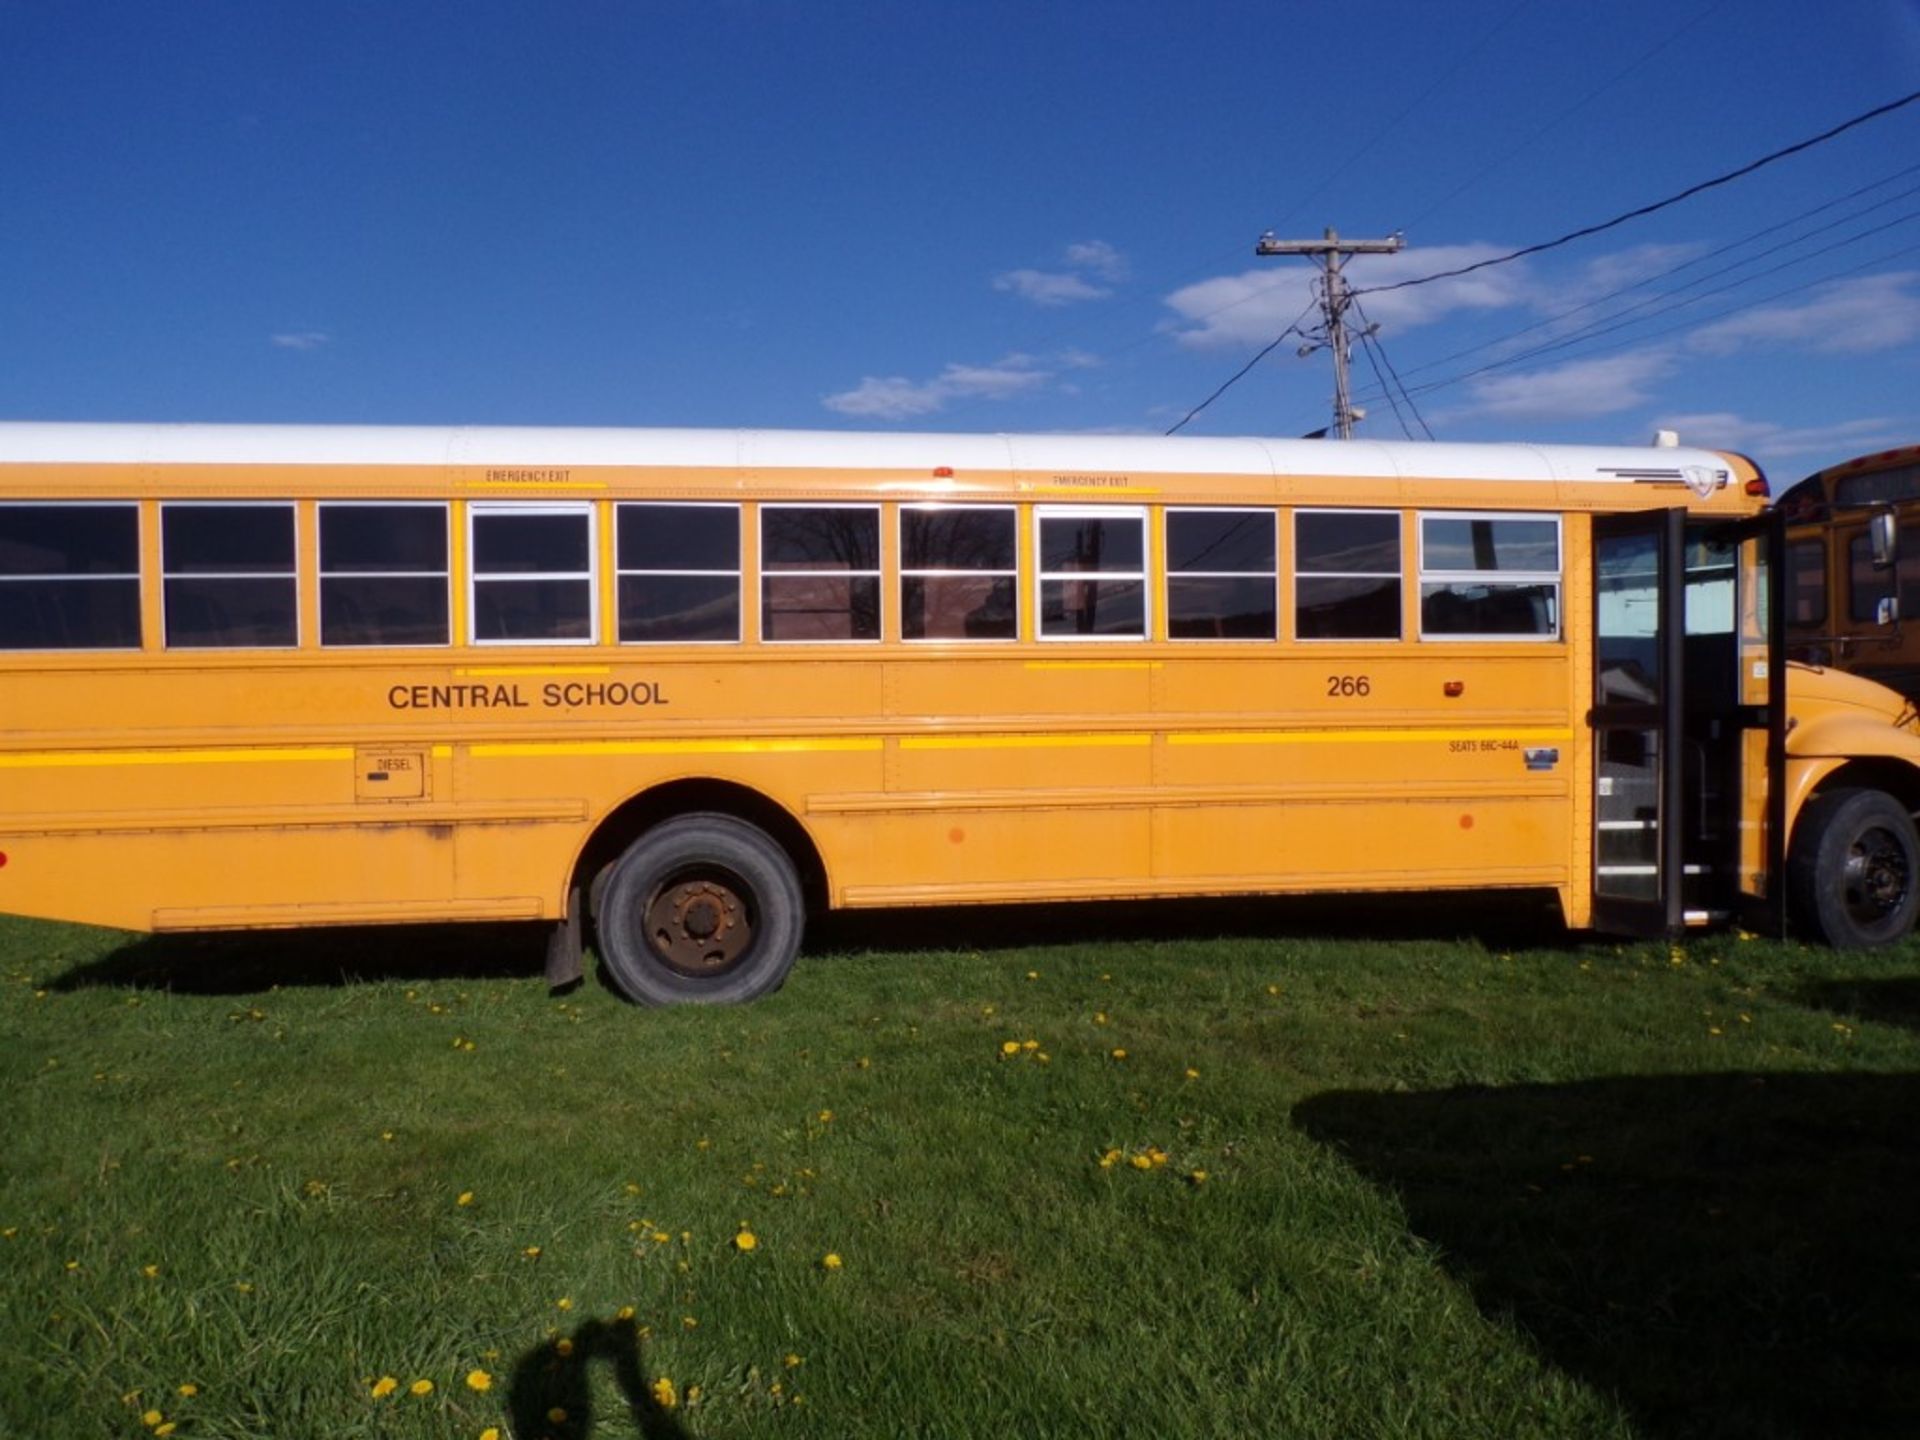 2014 International 66 Seat School Bus, Maxx Force Diesel, #266, 139,130 Miles, Vin # - Image 3 of 6